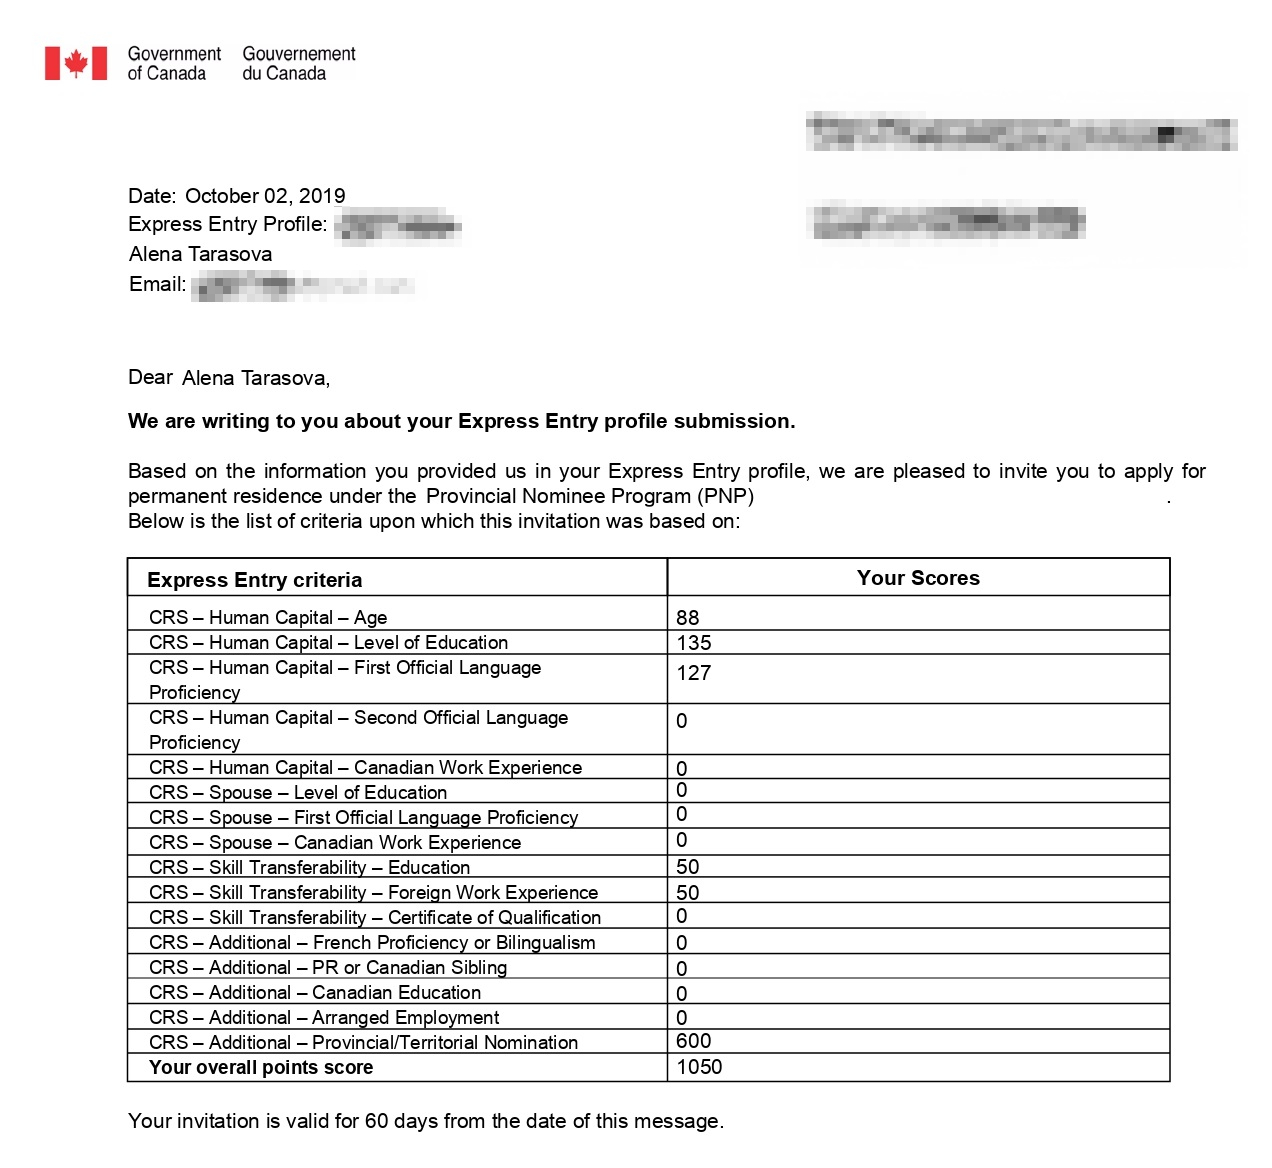 Правительство Канады приглашает меня подать документы на ВНЖ